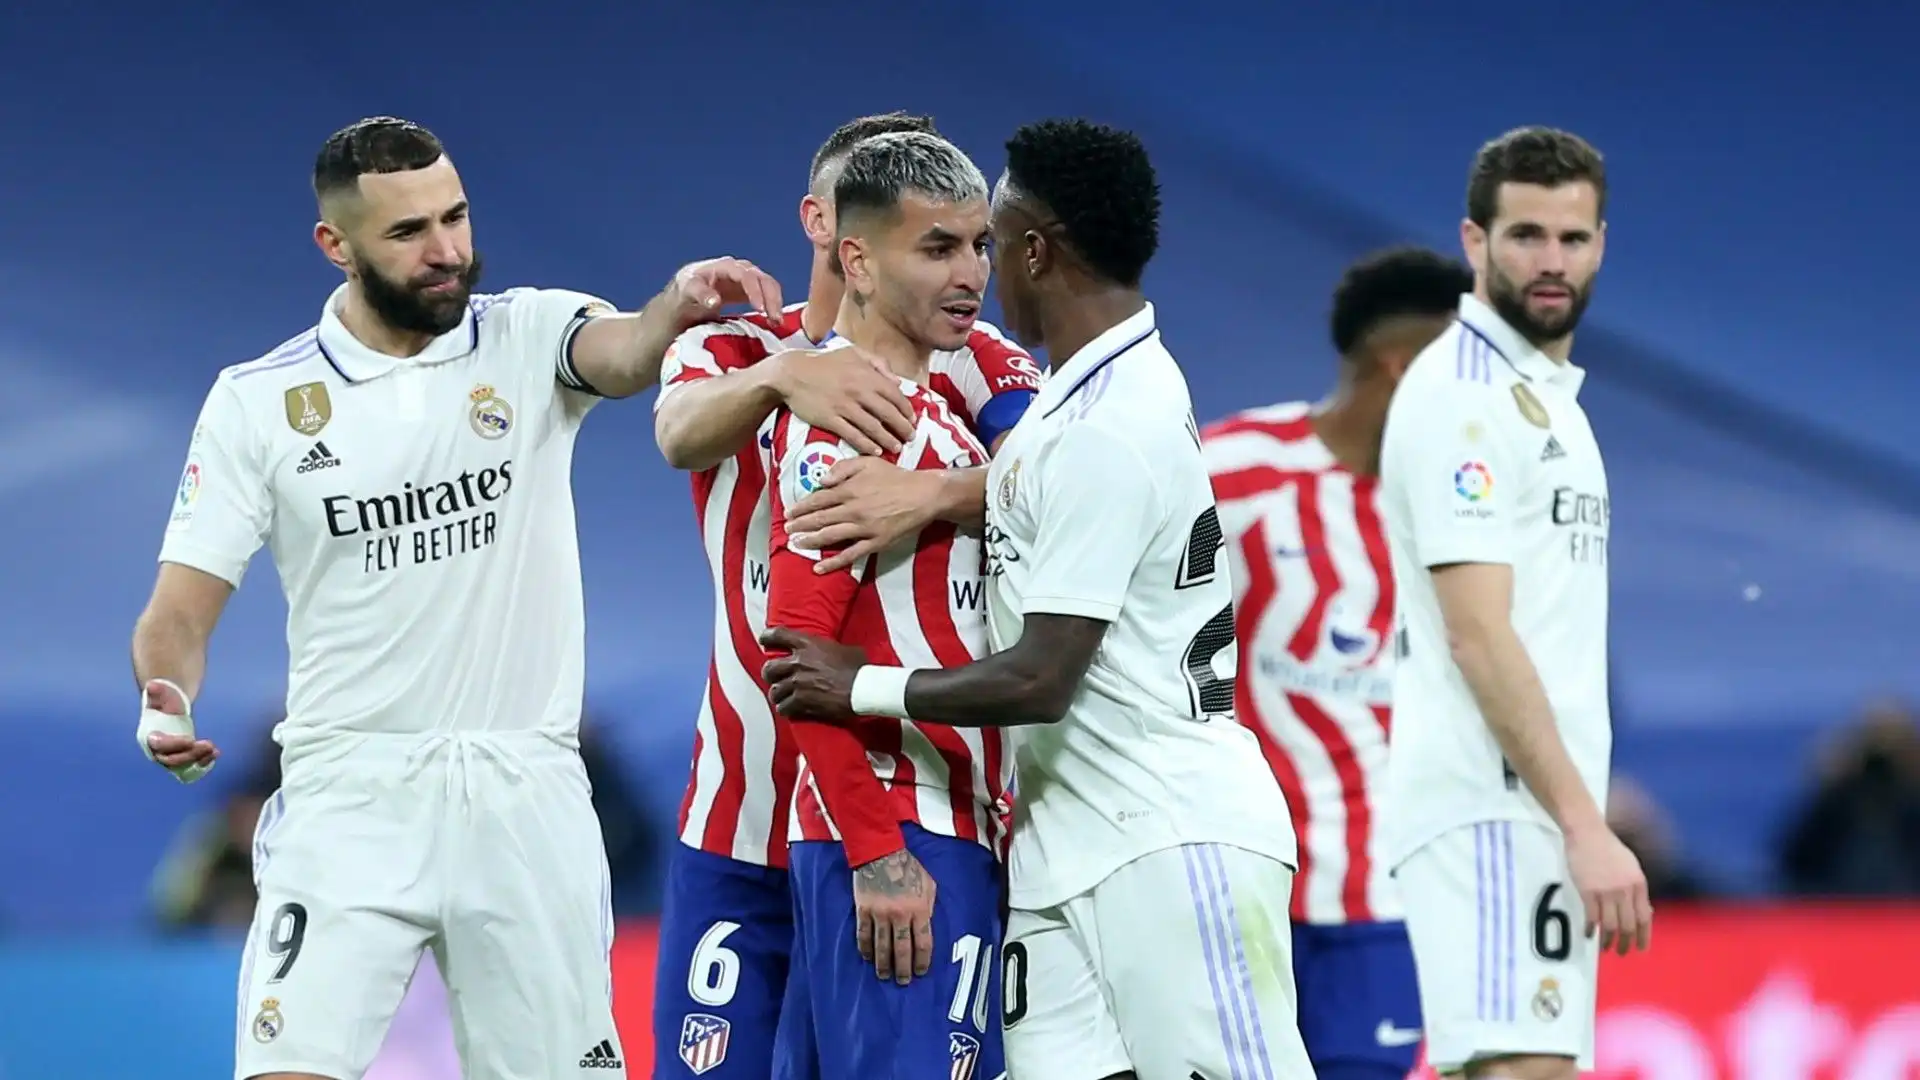 "Niente di nuovo al Santiago Bernabéu" ha scritto polemico l'Atletico Madrid sui social